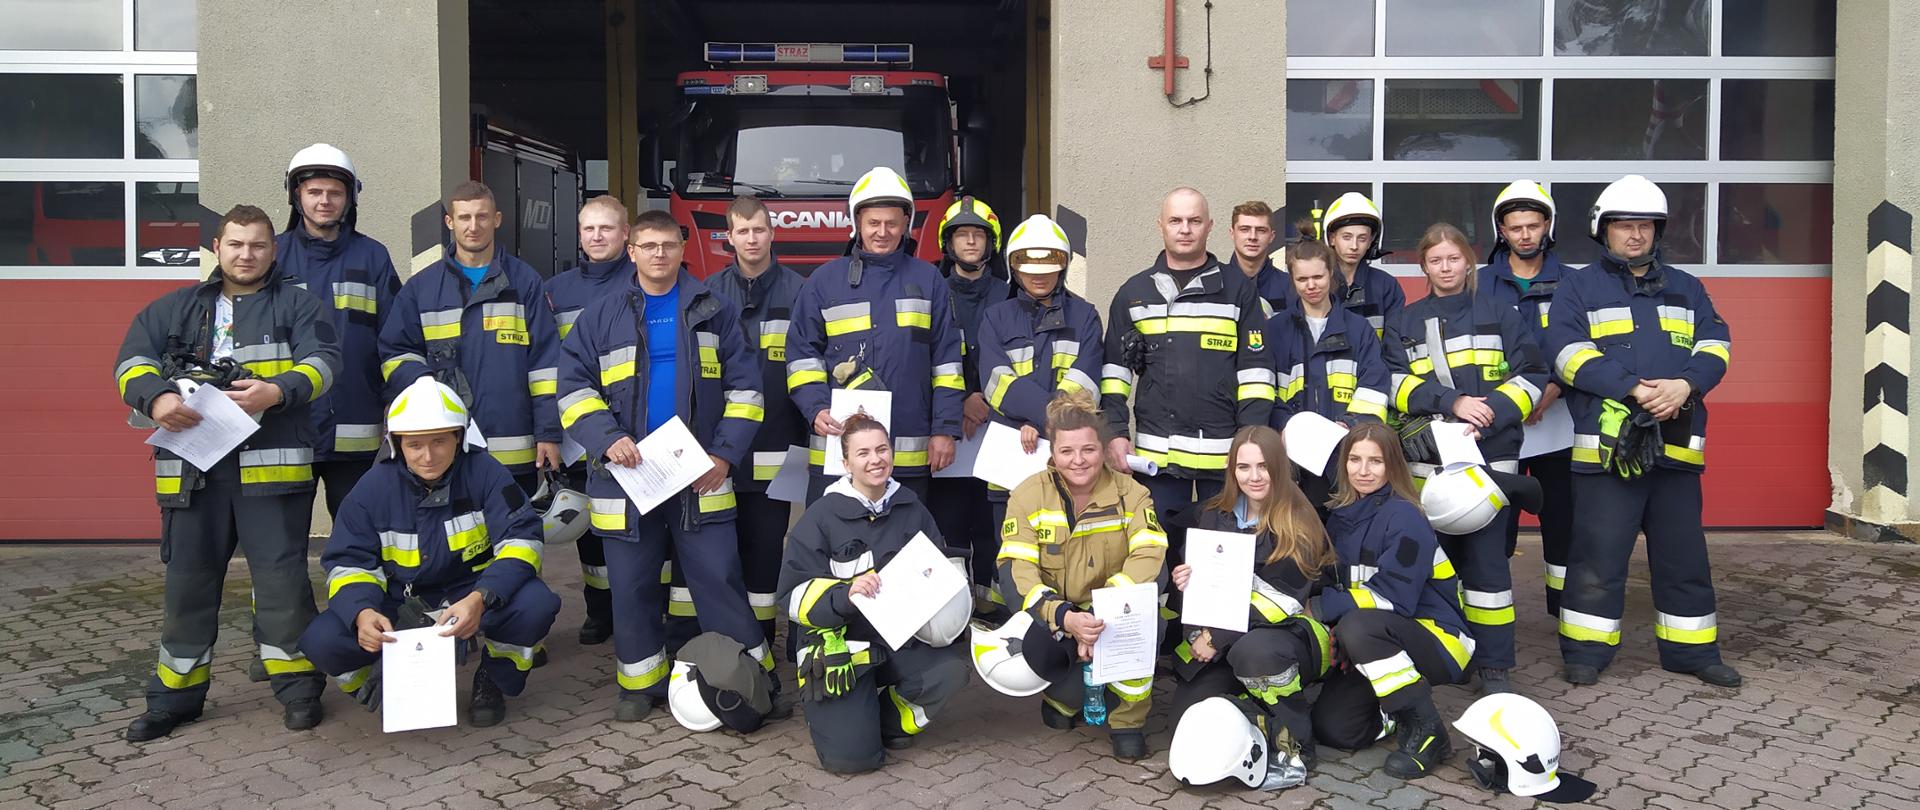 Szkolenie podstawowe strażaków OSP. Zdjęcie grupowe.